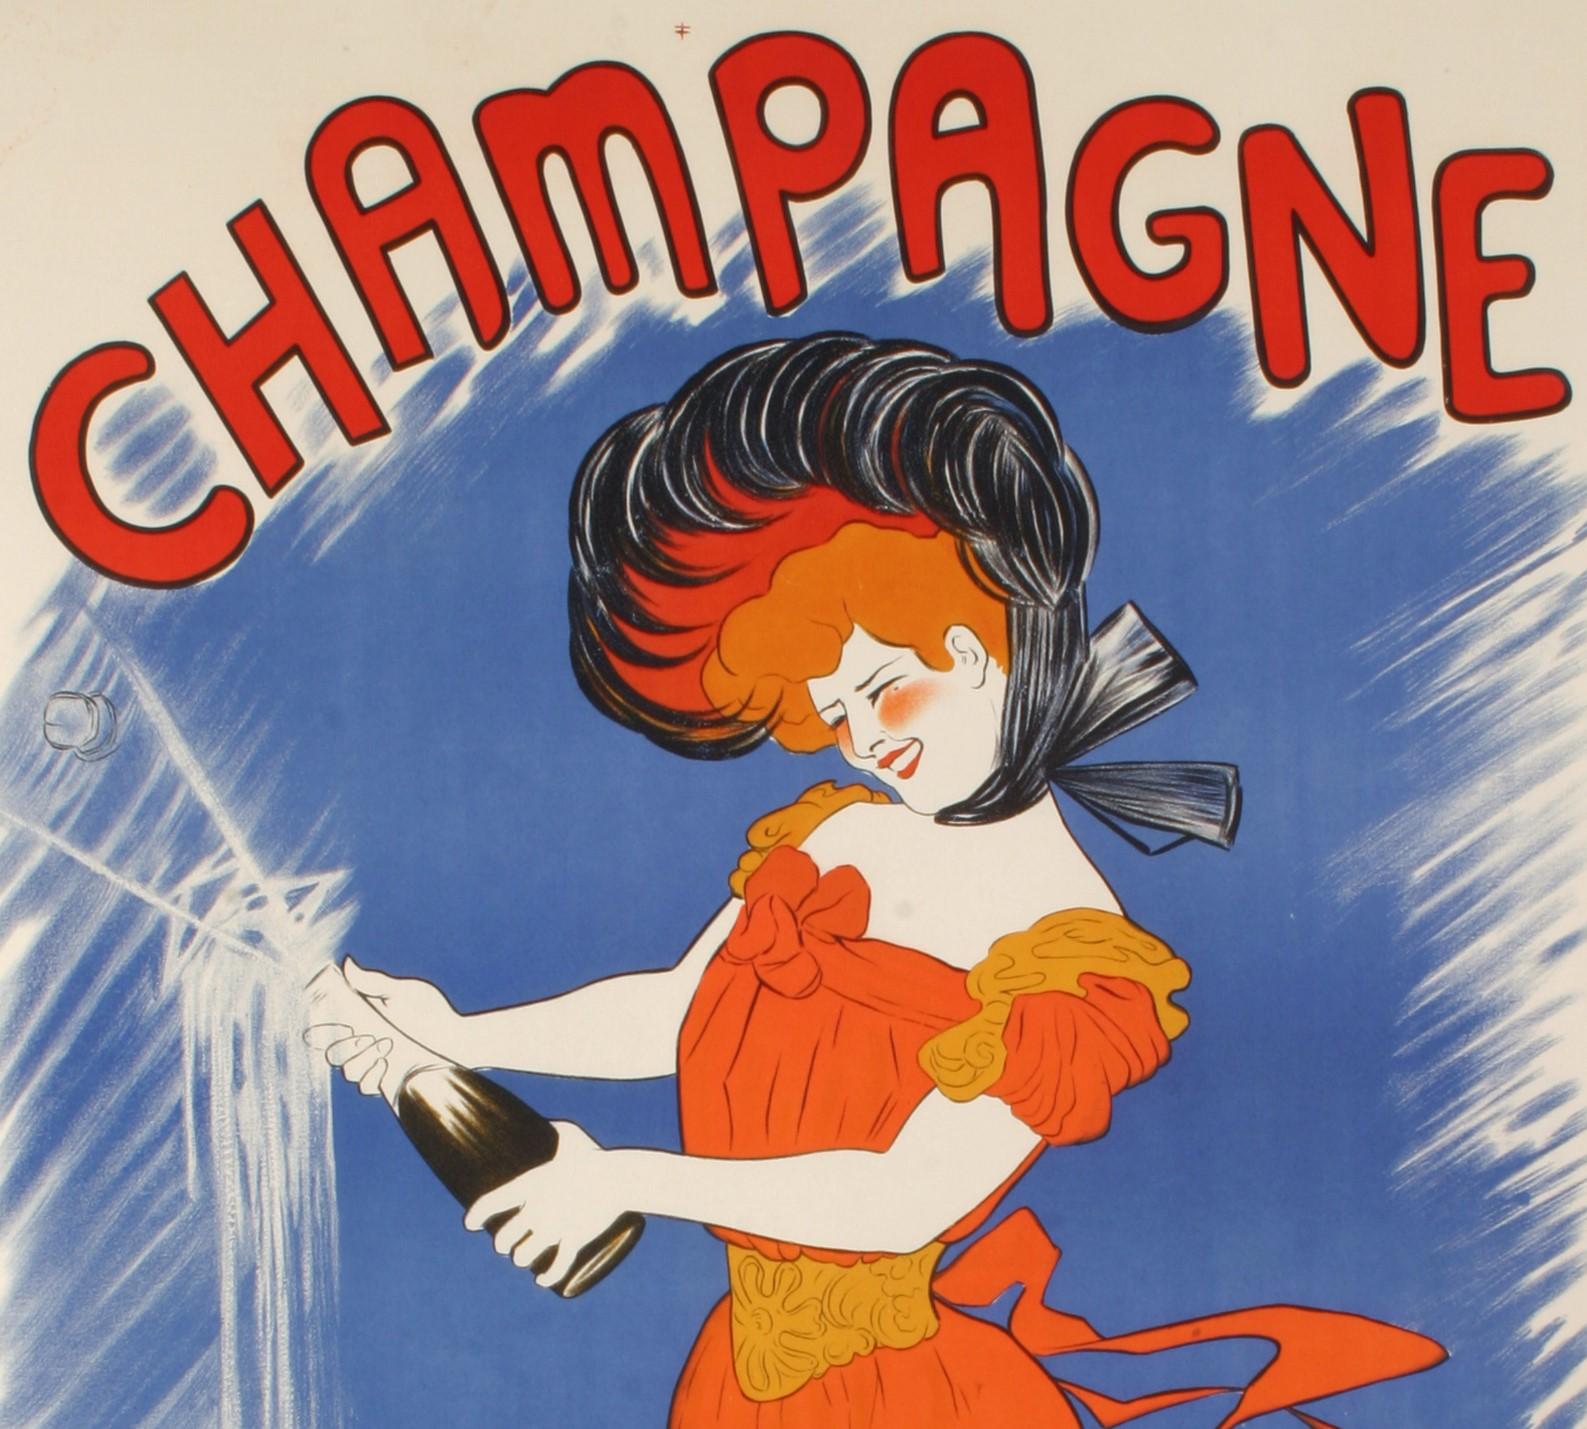 Affiche originale vintage sur l'alcool pour le Champagne Delbeck datant de 1902 par Leonetto Cappiello.

Artistics : Leonetto Cappiello (1875 - 1942) 
Titre : Champagne Delbeck
Date : 1902
Taille : 33 x 54.5 in / 96.5 x 138.5 cm
Imprimeur :